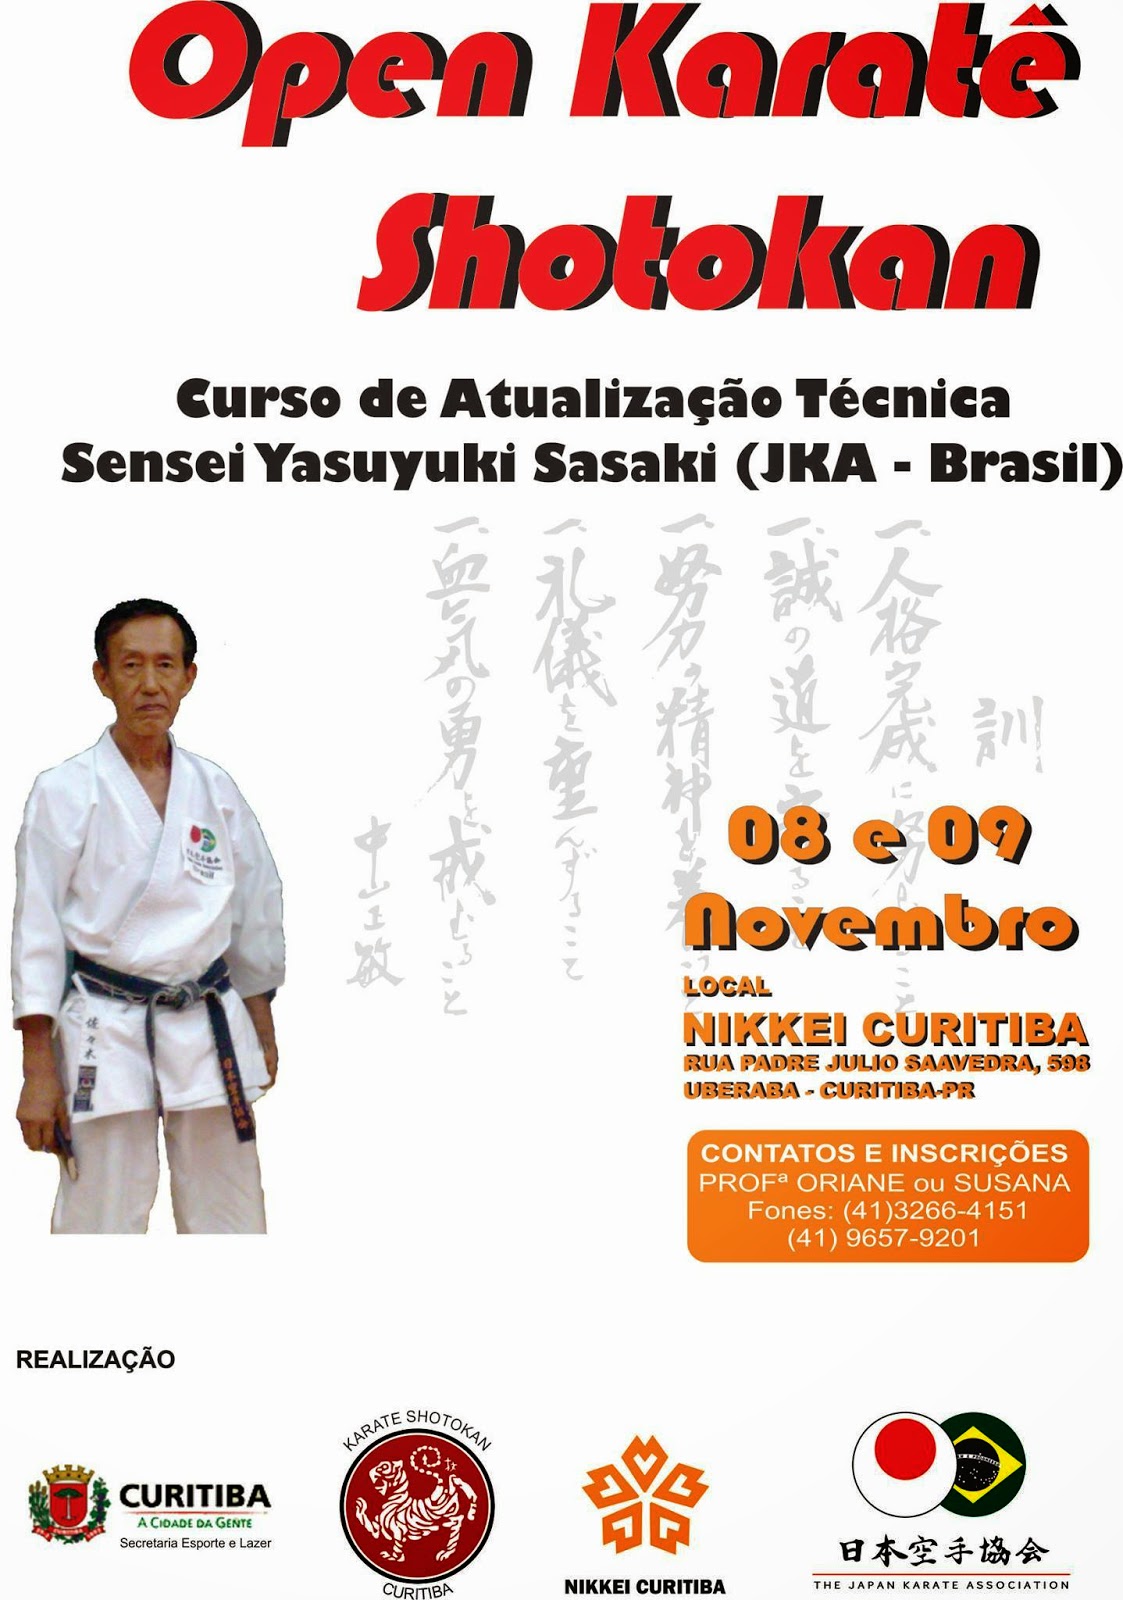 Jka Nikkey Associacao Araponguense Open Karate Shotokan E